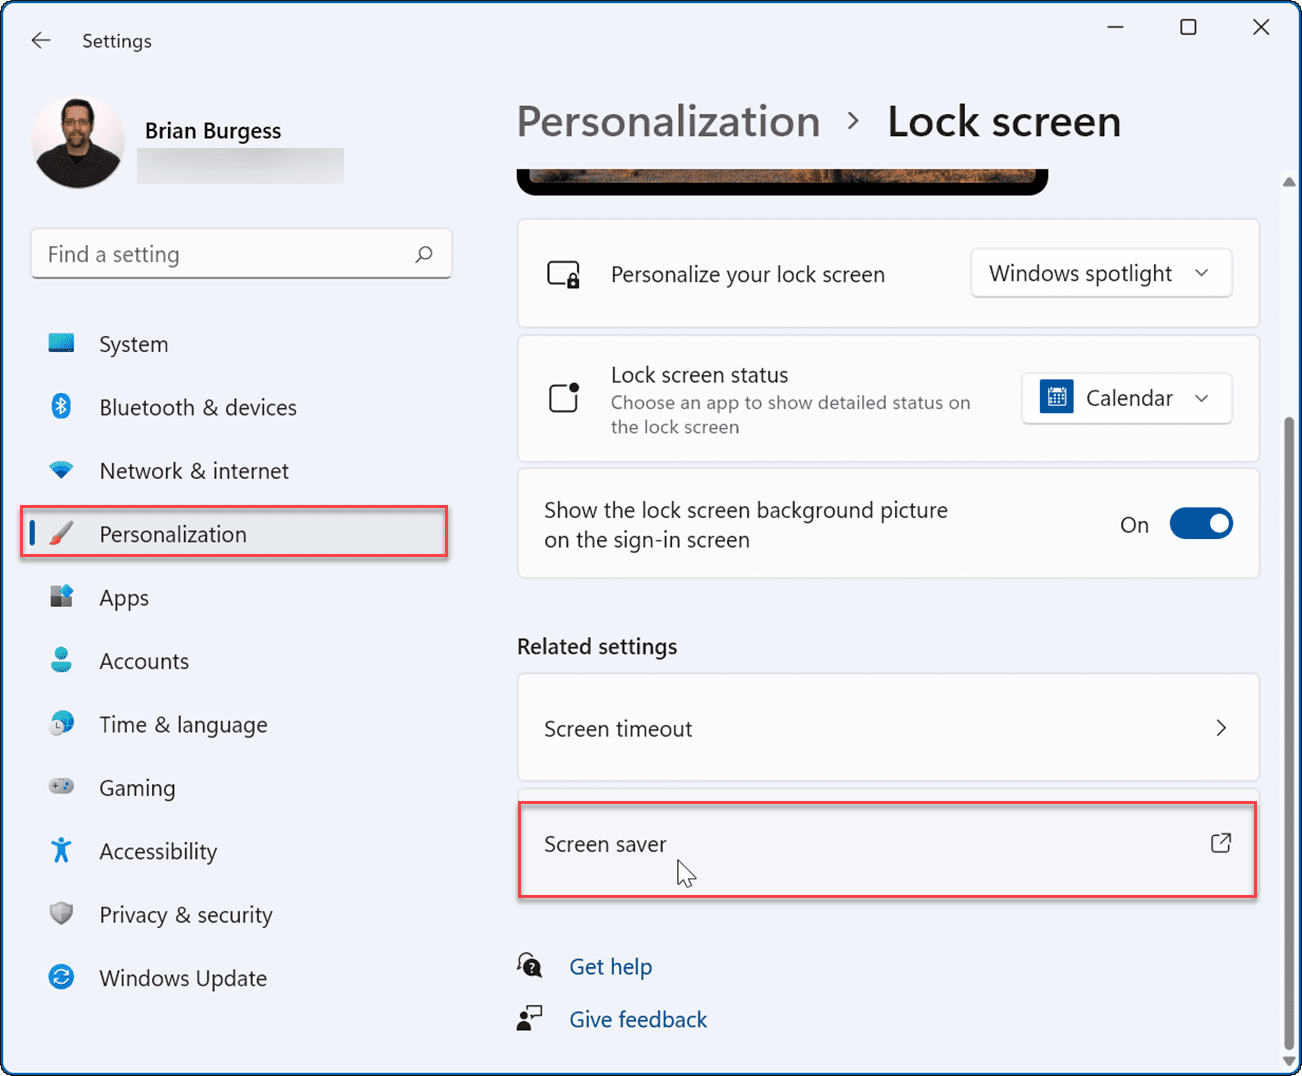 Персонализация-блокировка экрана, установка фотографий в качестве экранной заставки в Windows